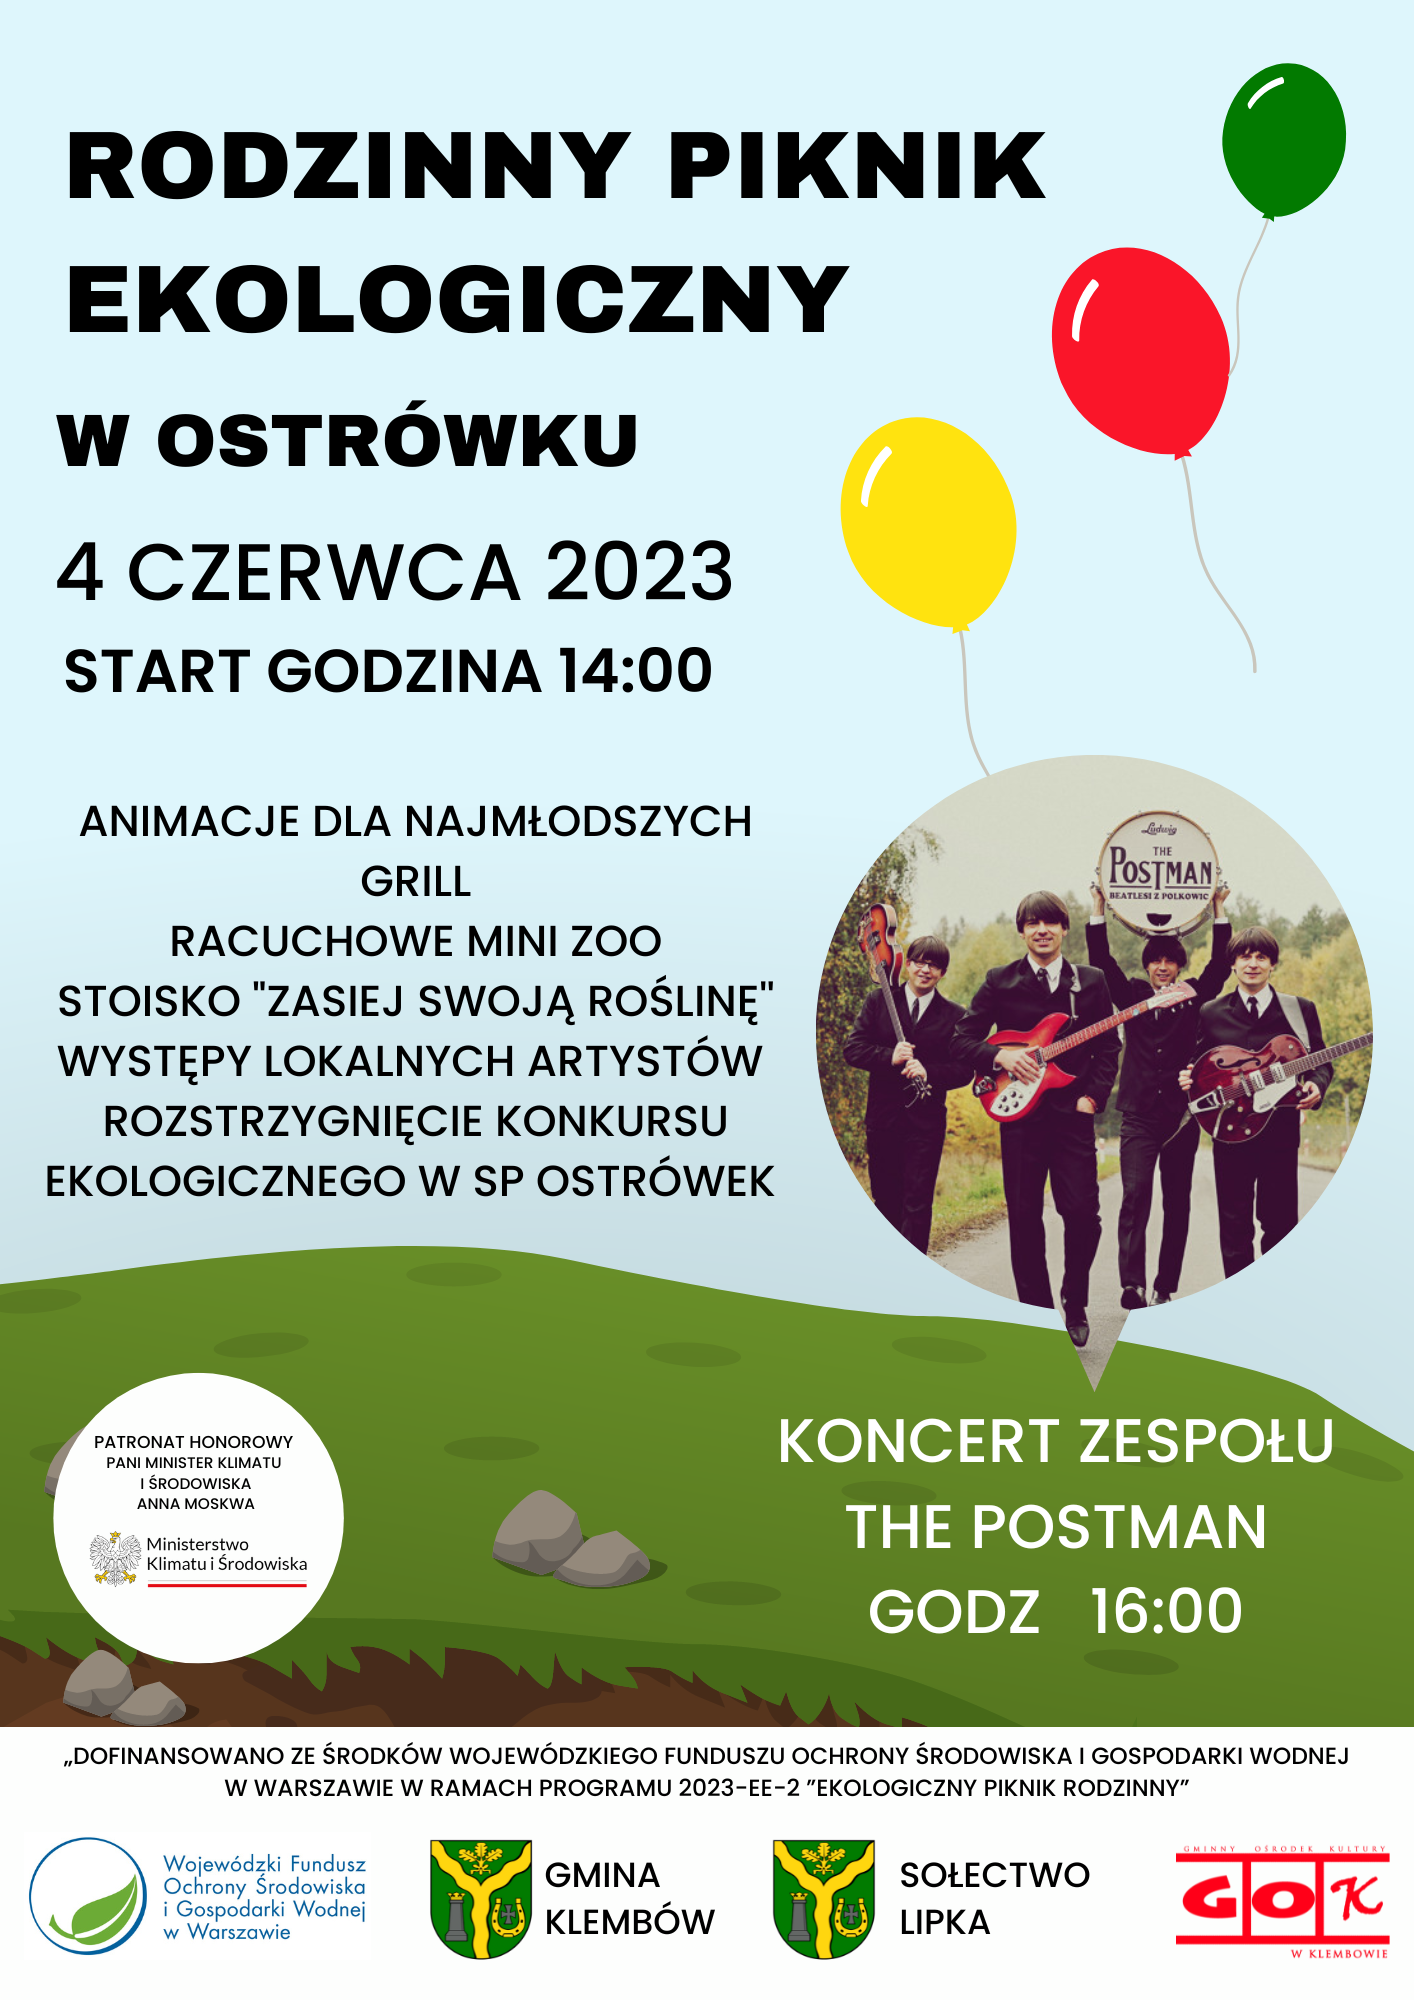 Serdecznie zapraszamy na Rodzinny Piknik Ekologiczny w Ostrówku, który odbędzie się w dniu 4 czerwca 2023 r., w parku przy ul. Kolejowej.   Piknik rozpocznie się o godzinie 14:00.